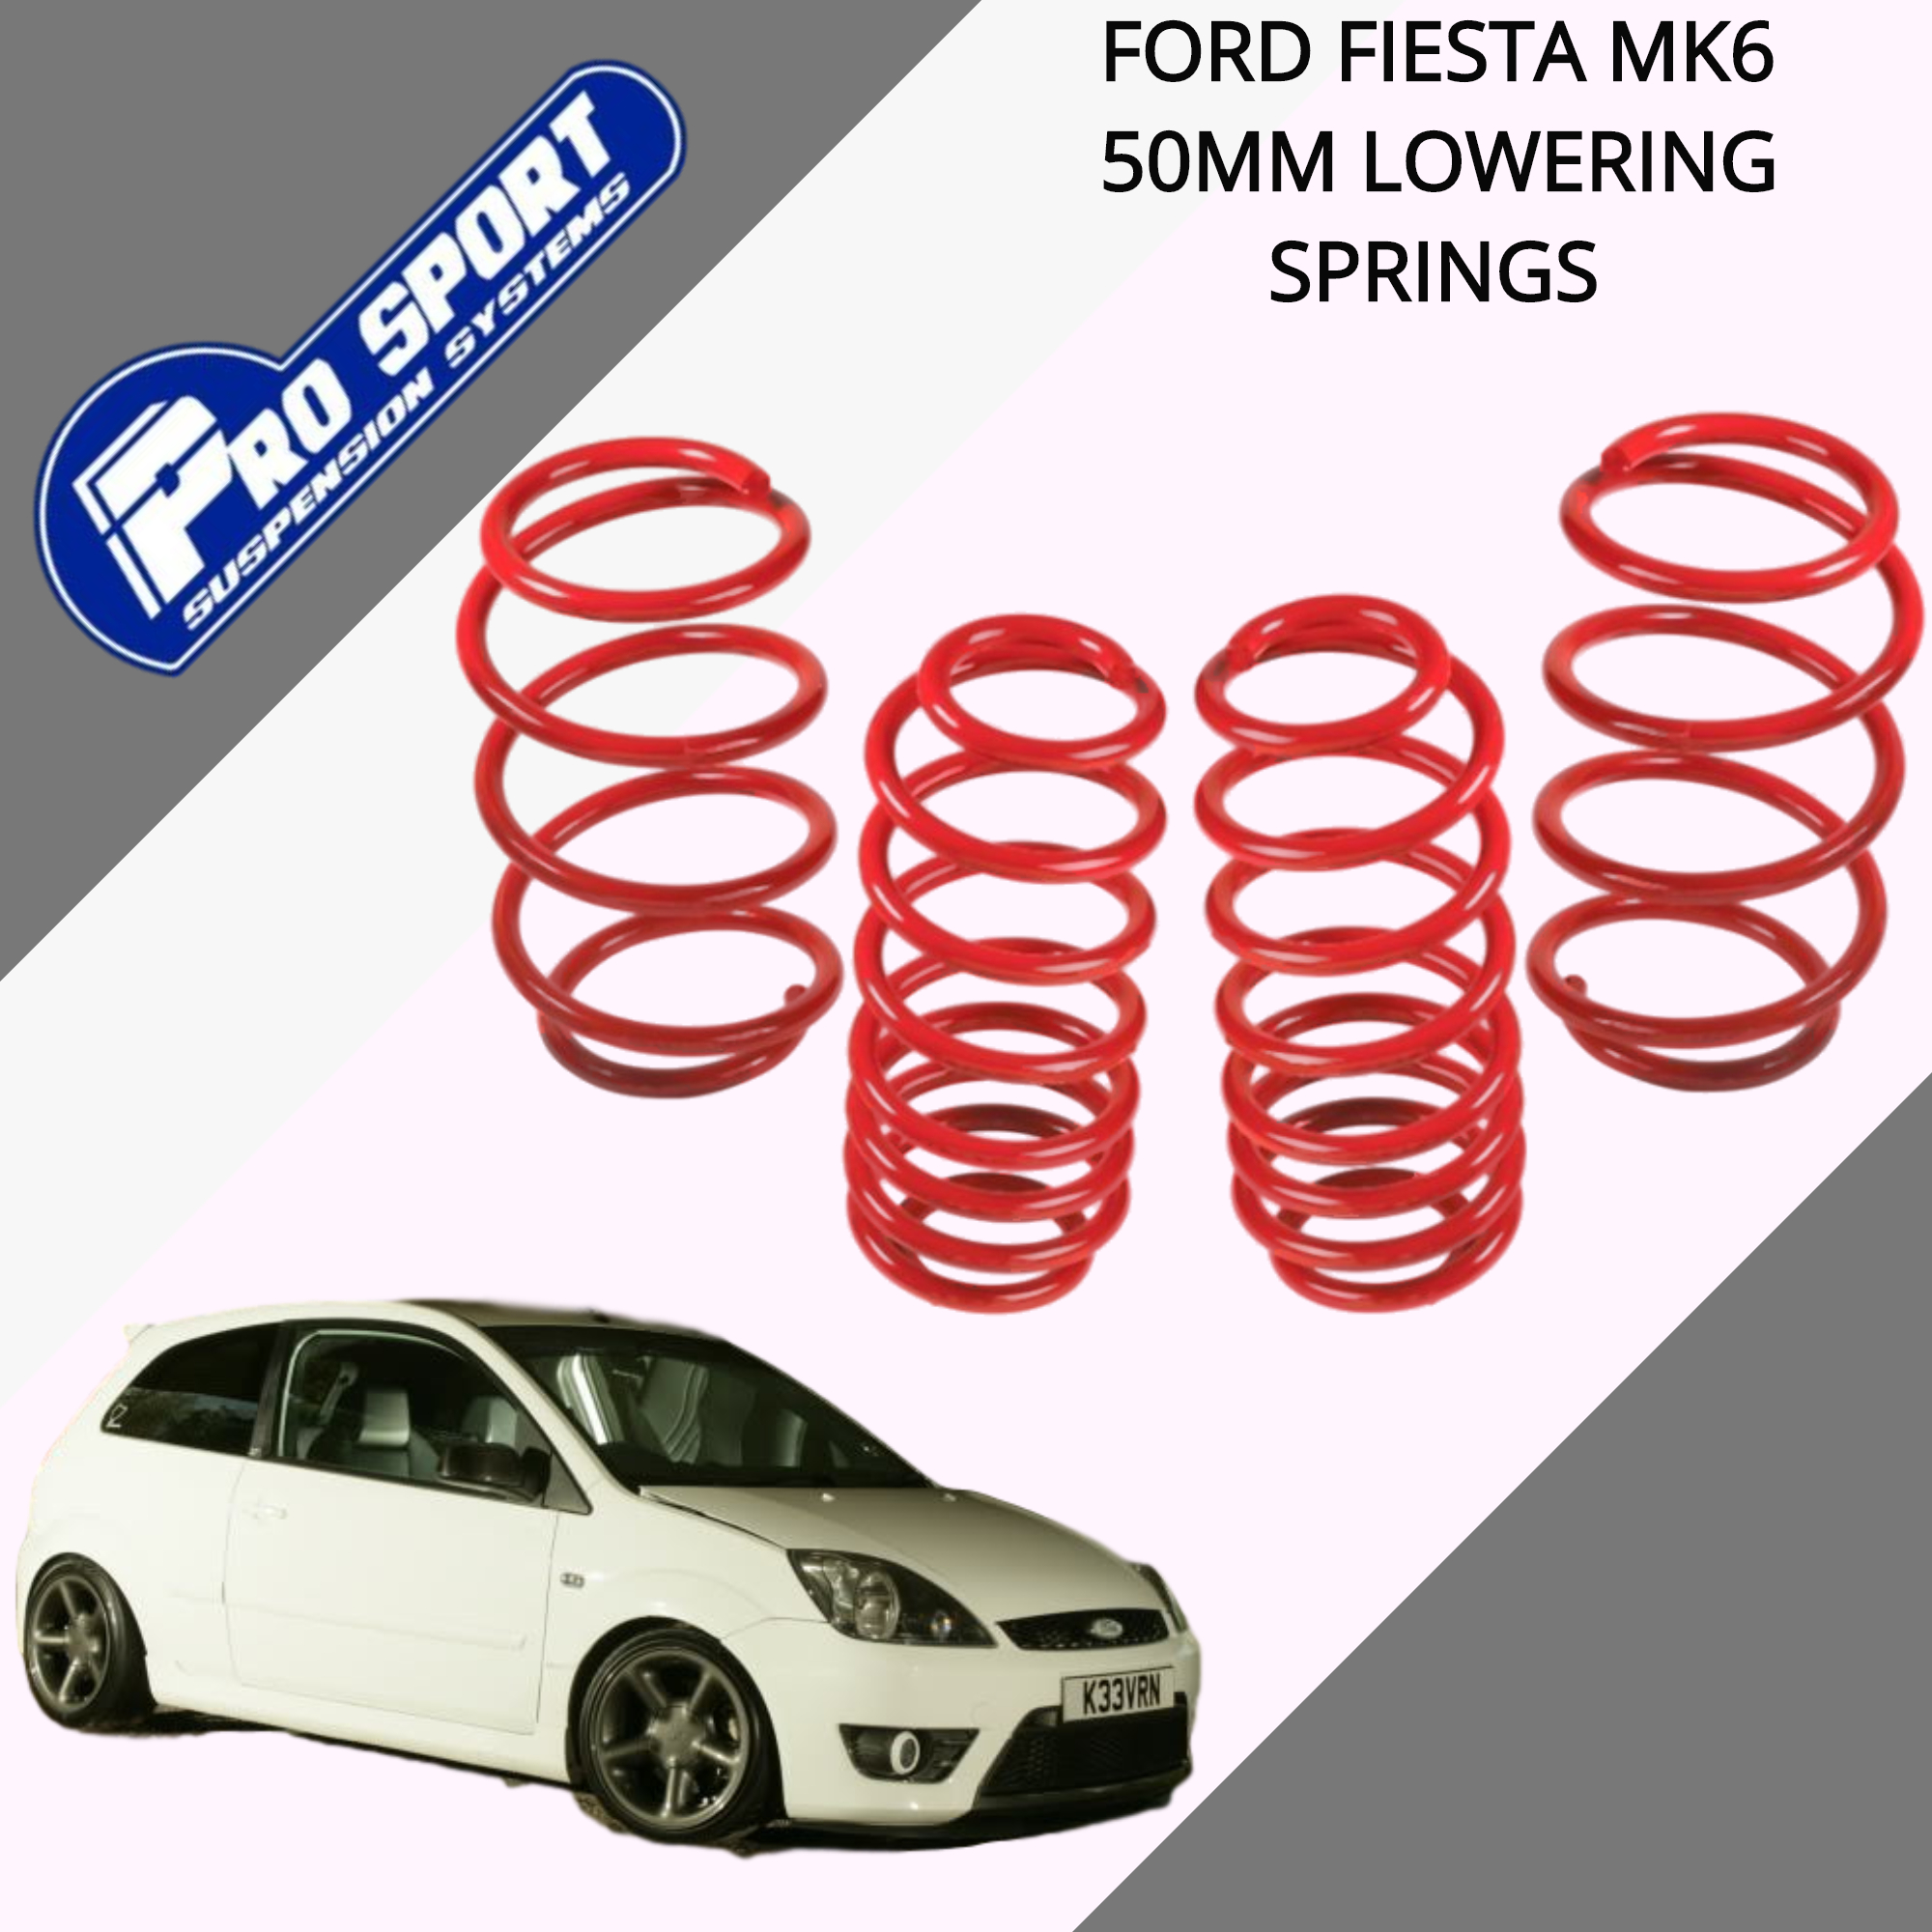 Ford Fiesta 1.4 1.6 TDCi 2002-08 mk6 lowering springs 45 mm ** Rears **